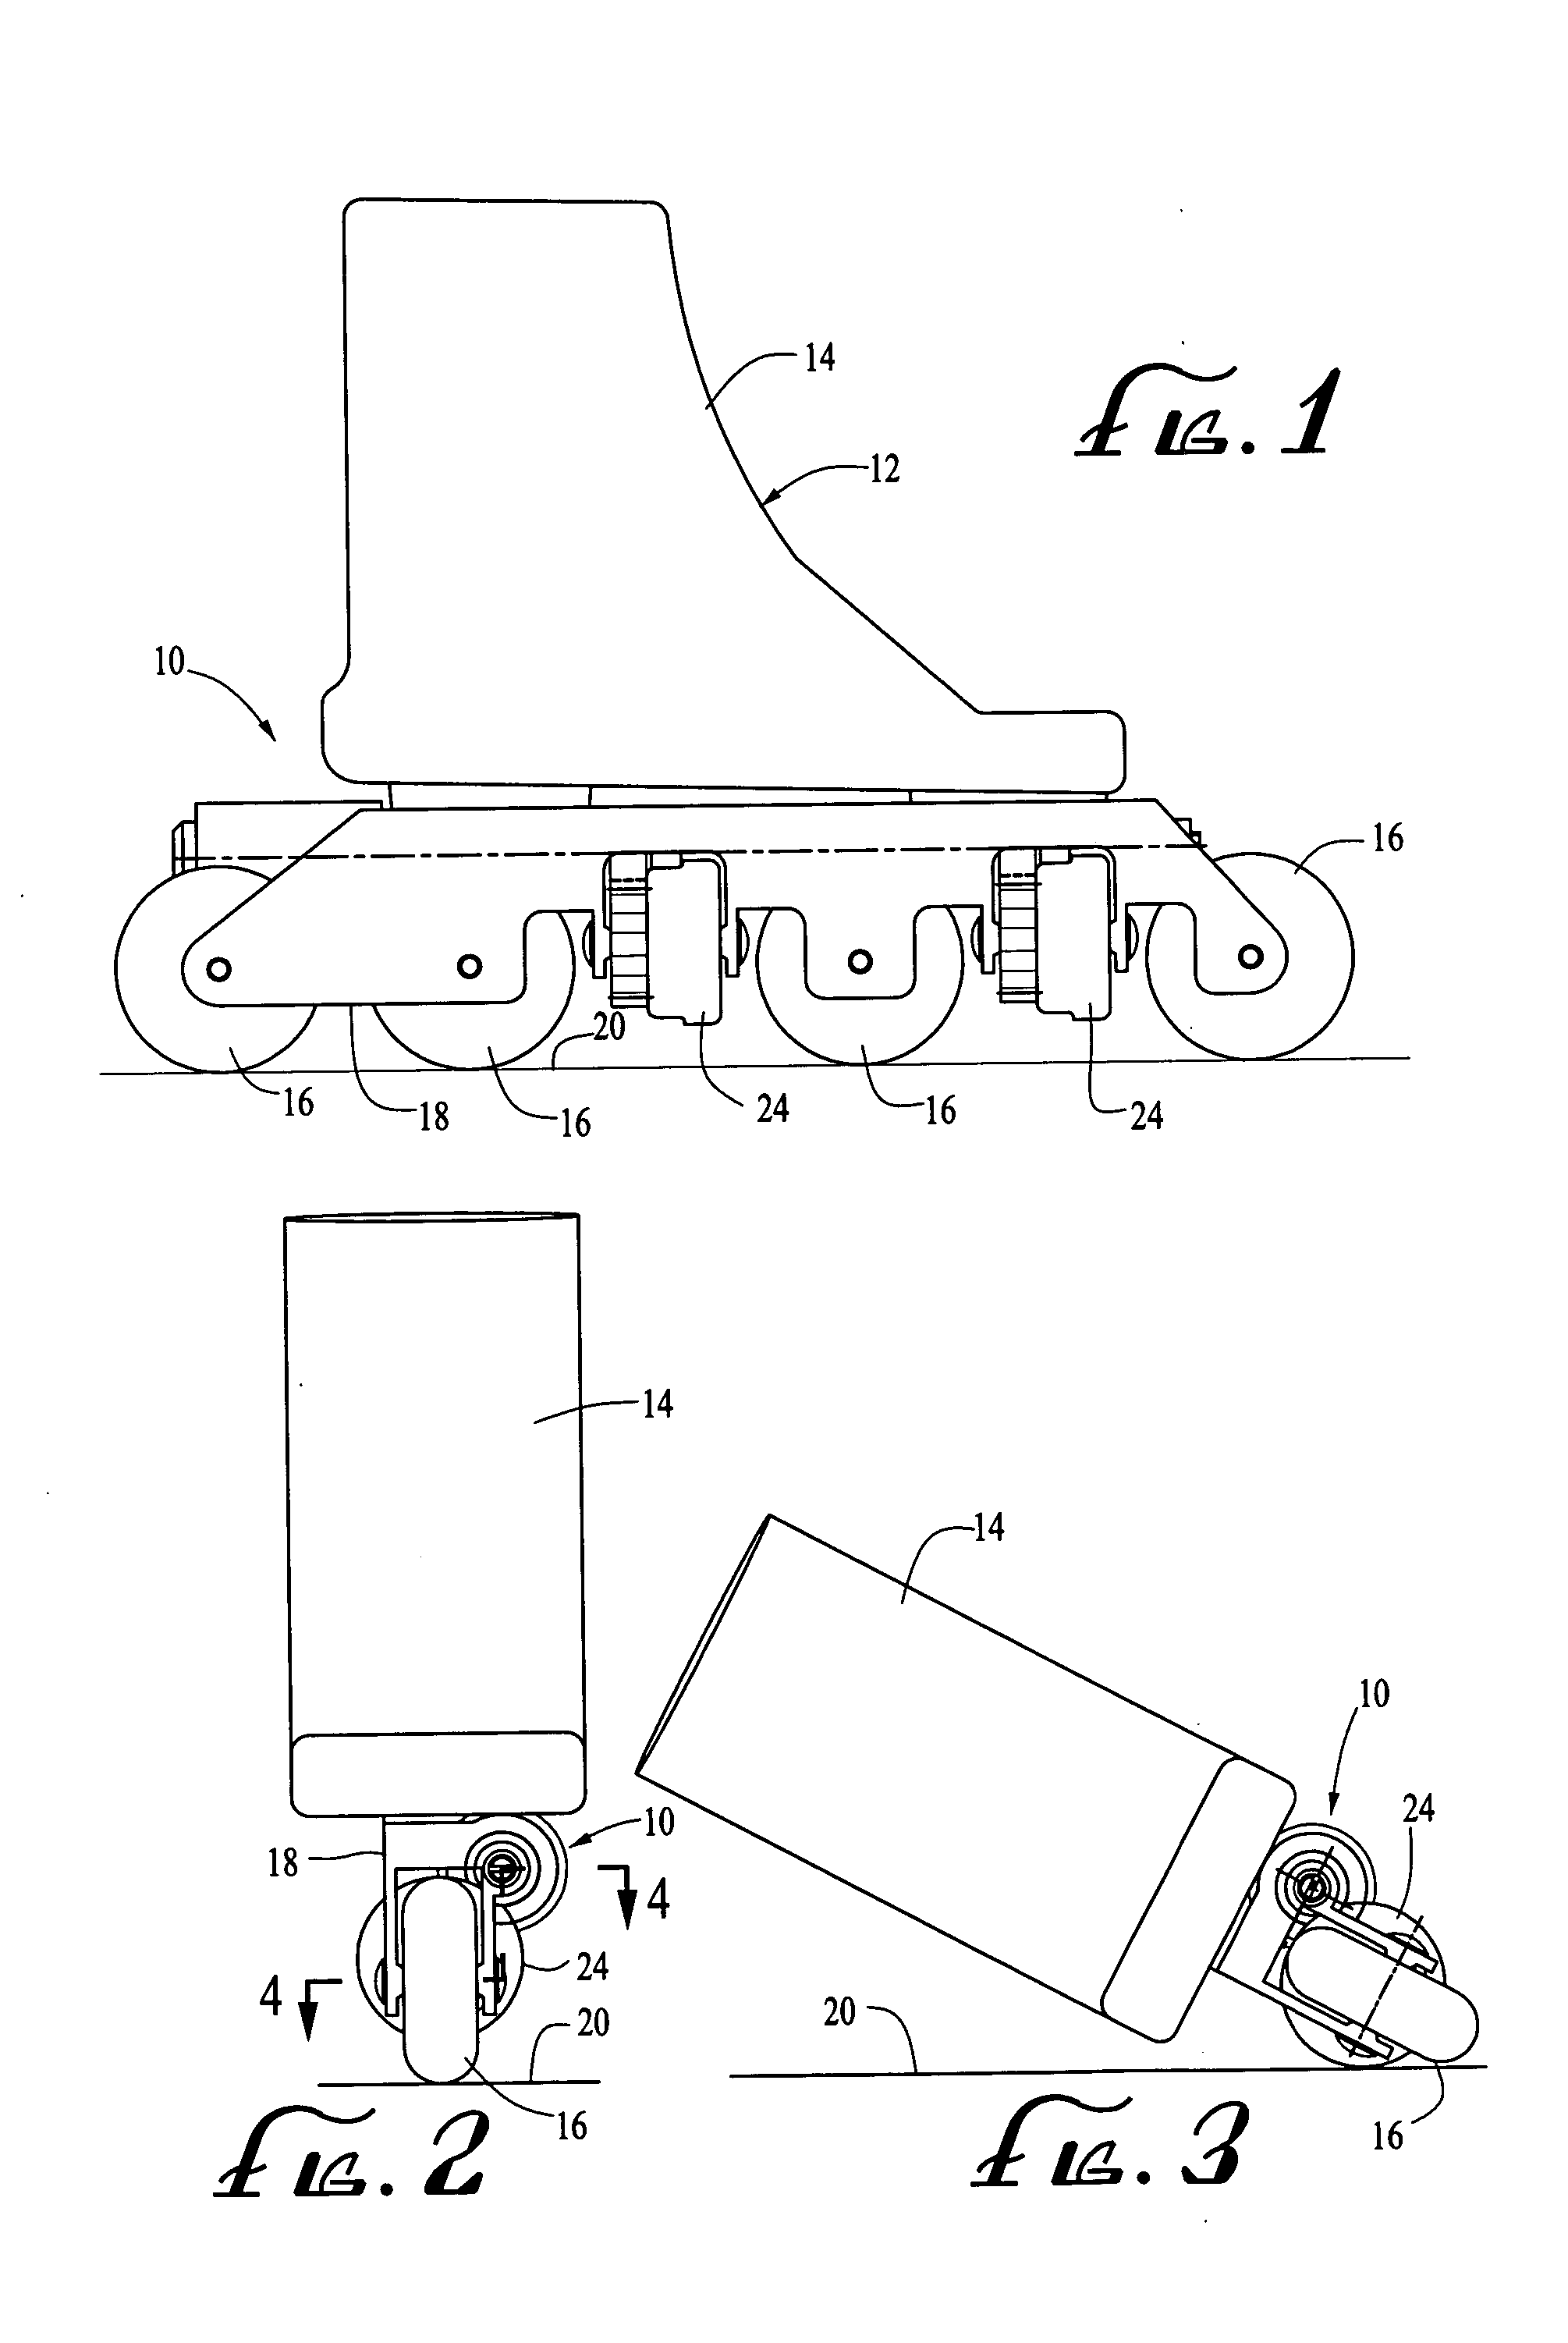 In-line roller skate braking mechanism